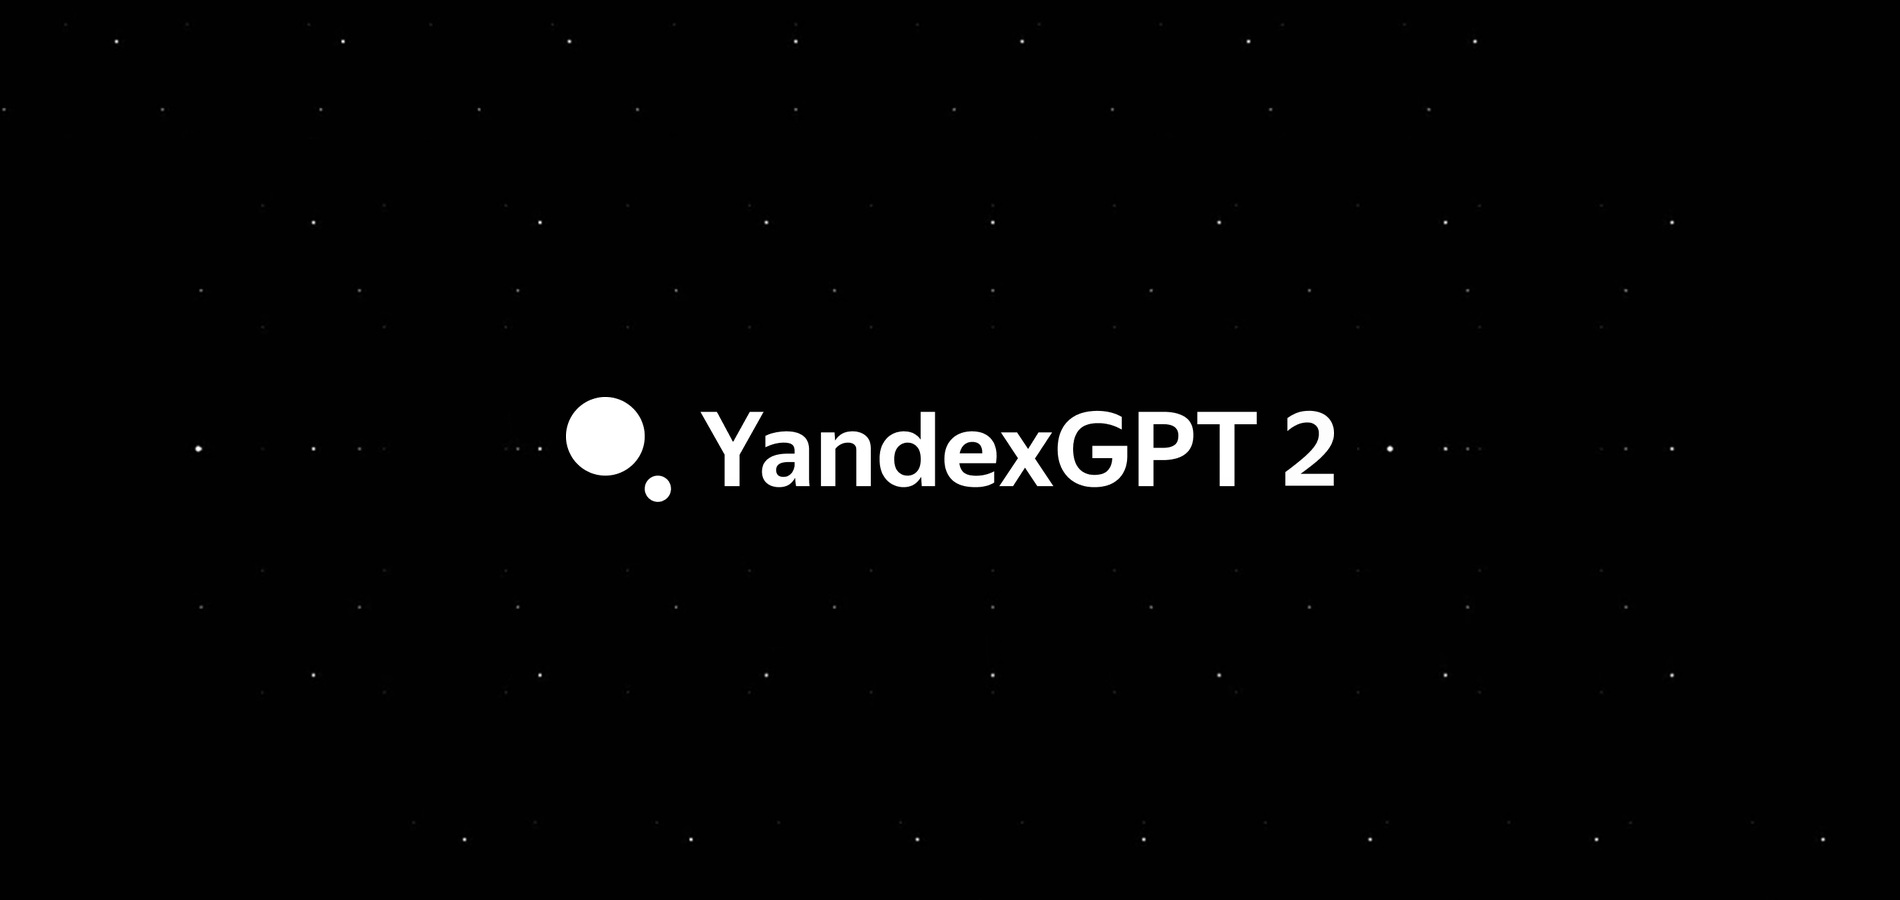 Яндекс представил новую версию нейросети YandexGPT 2